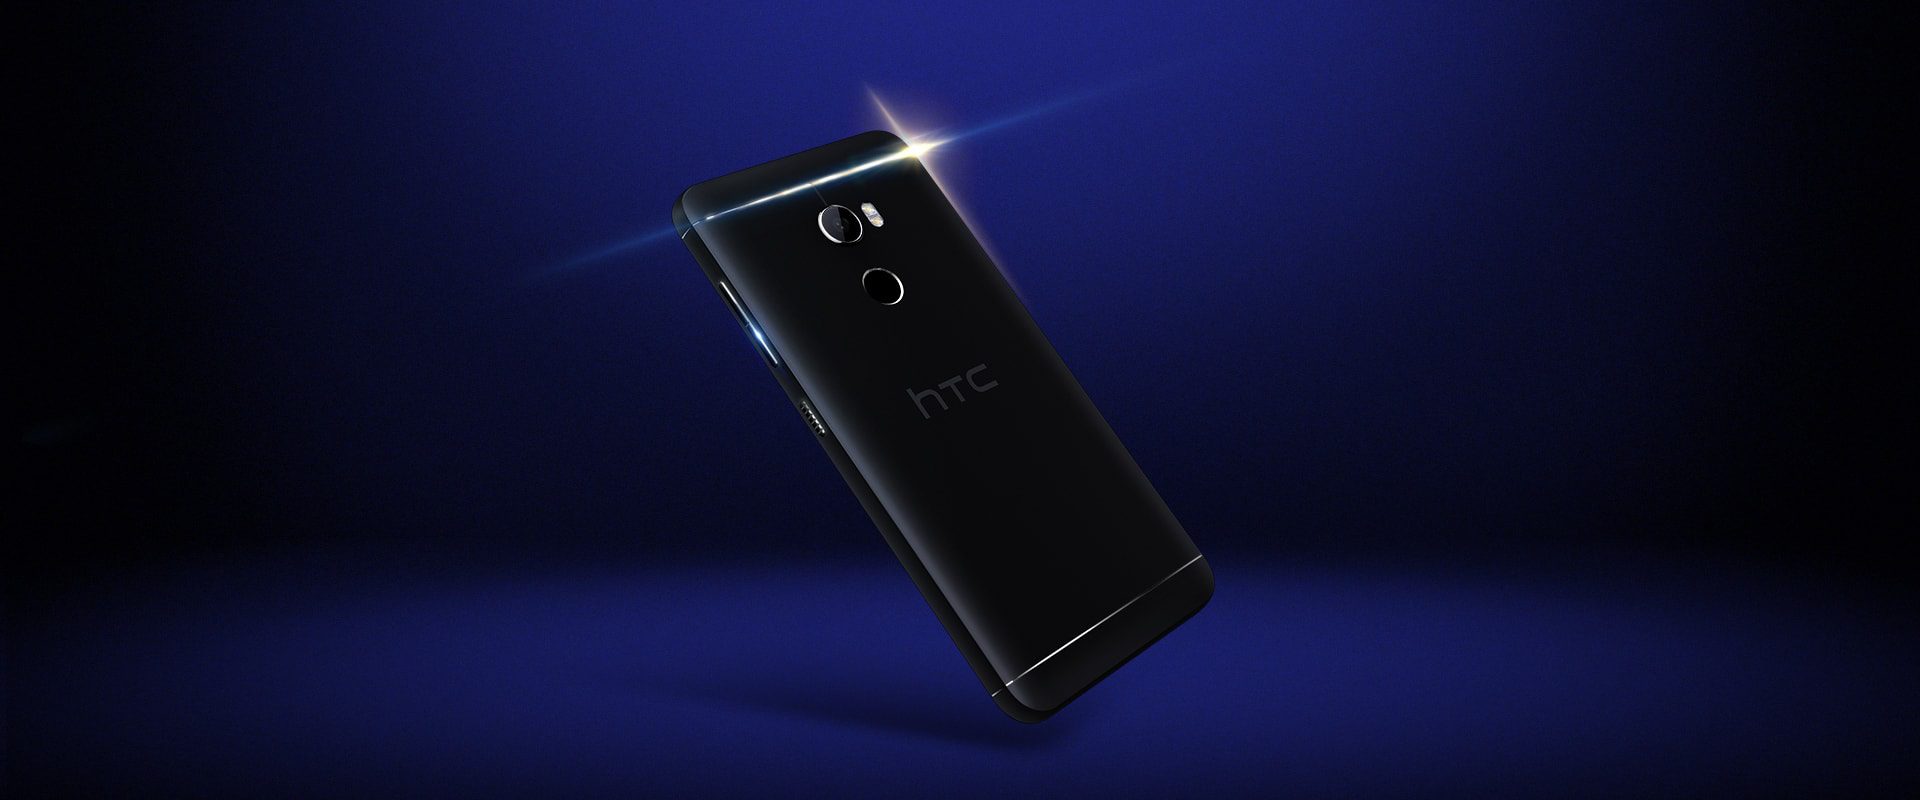 HTC One X10 hero